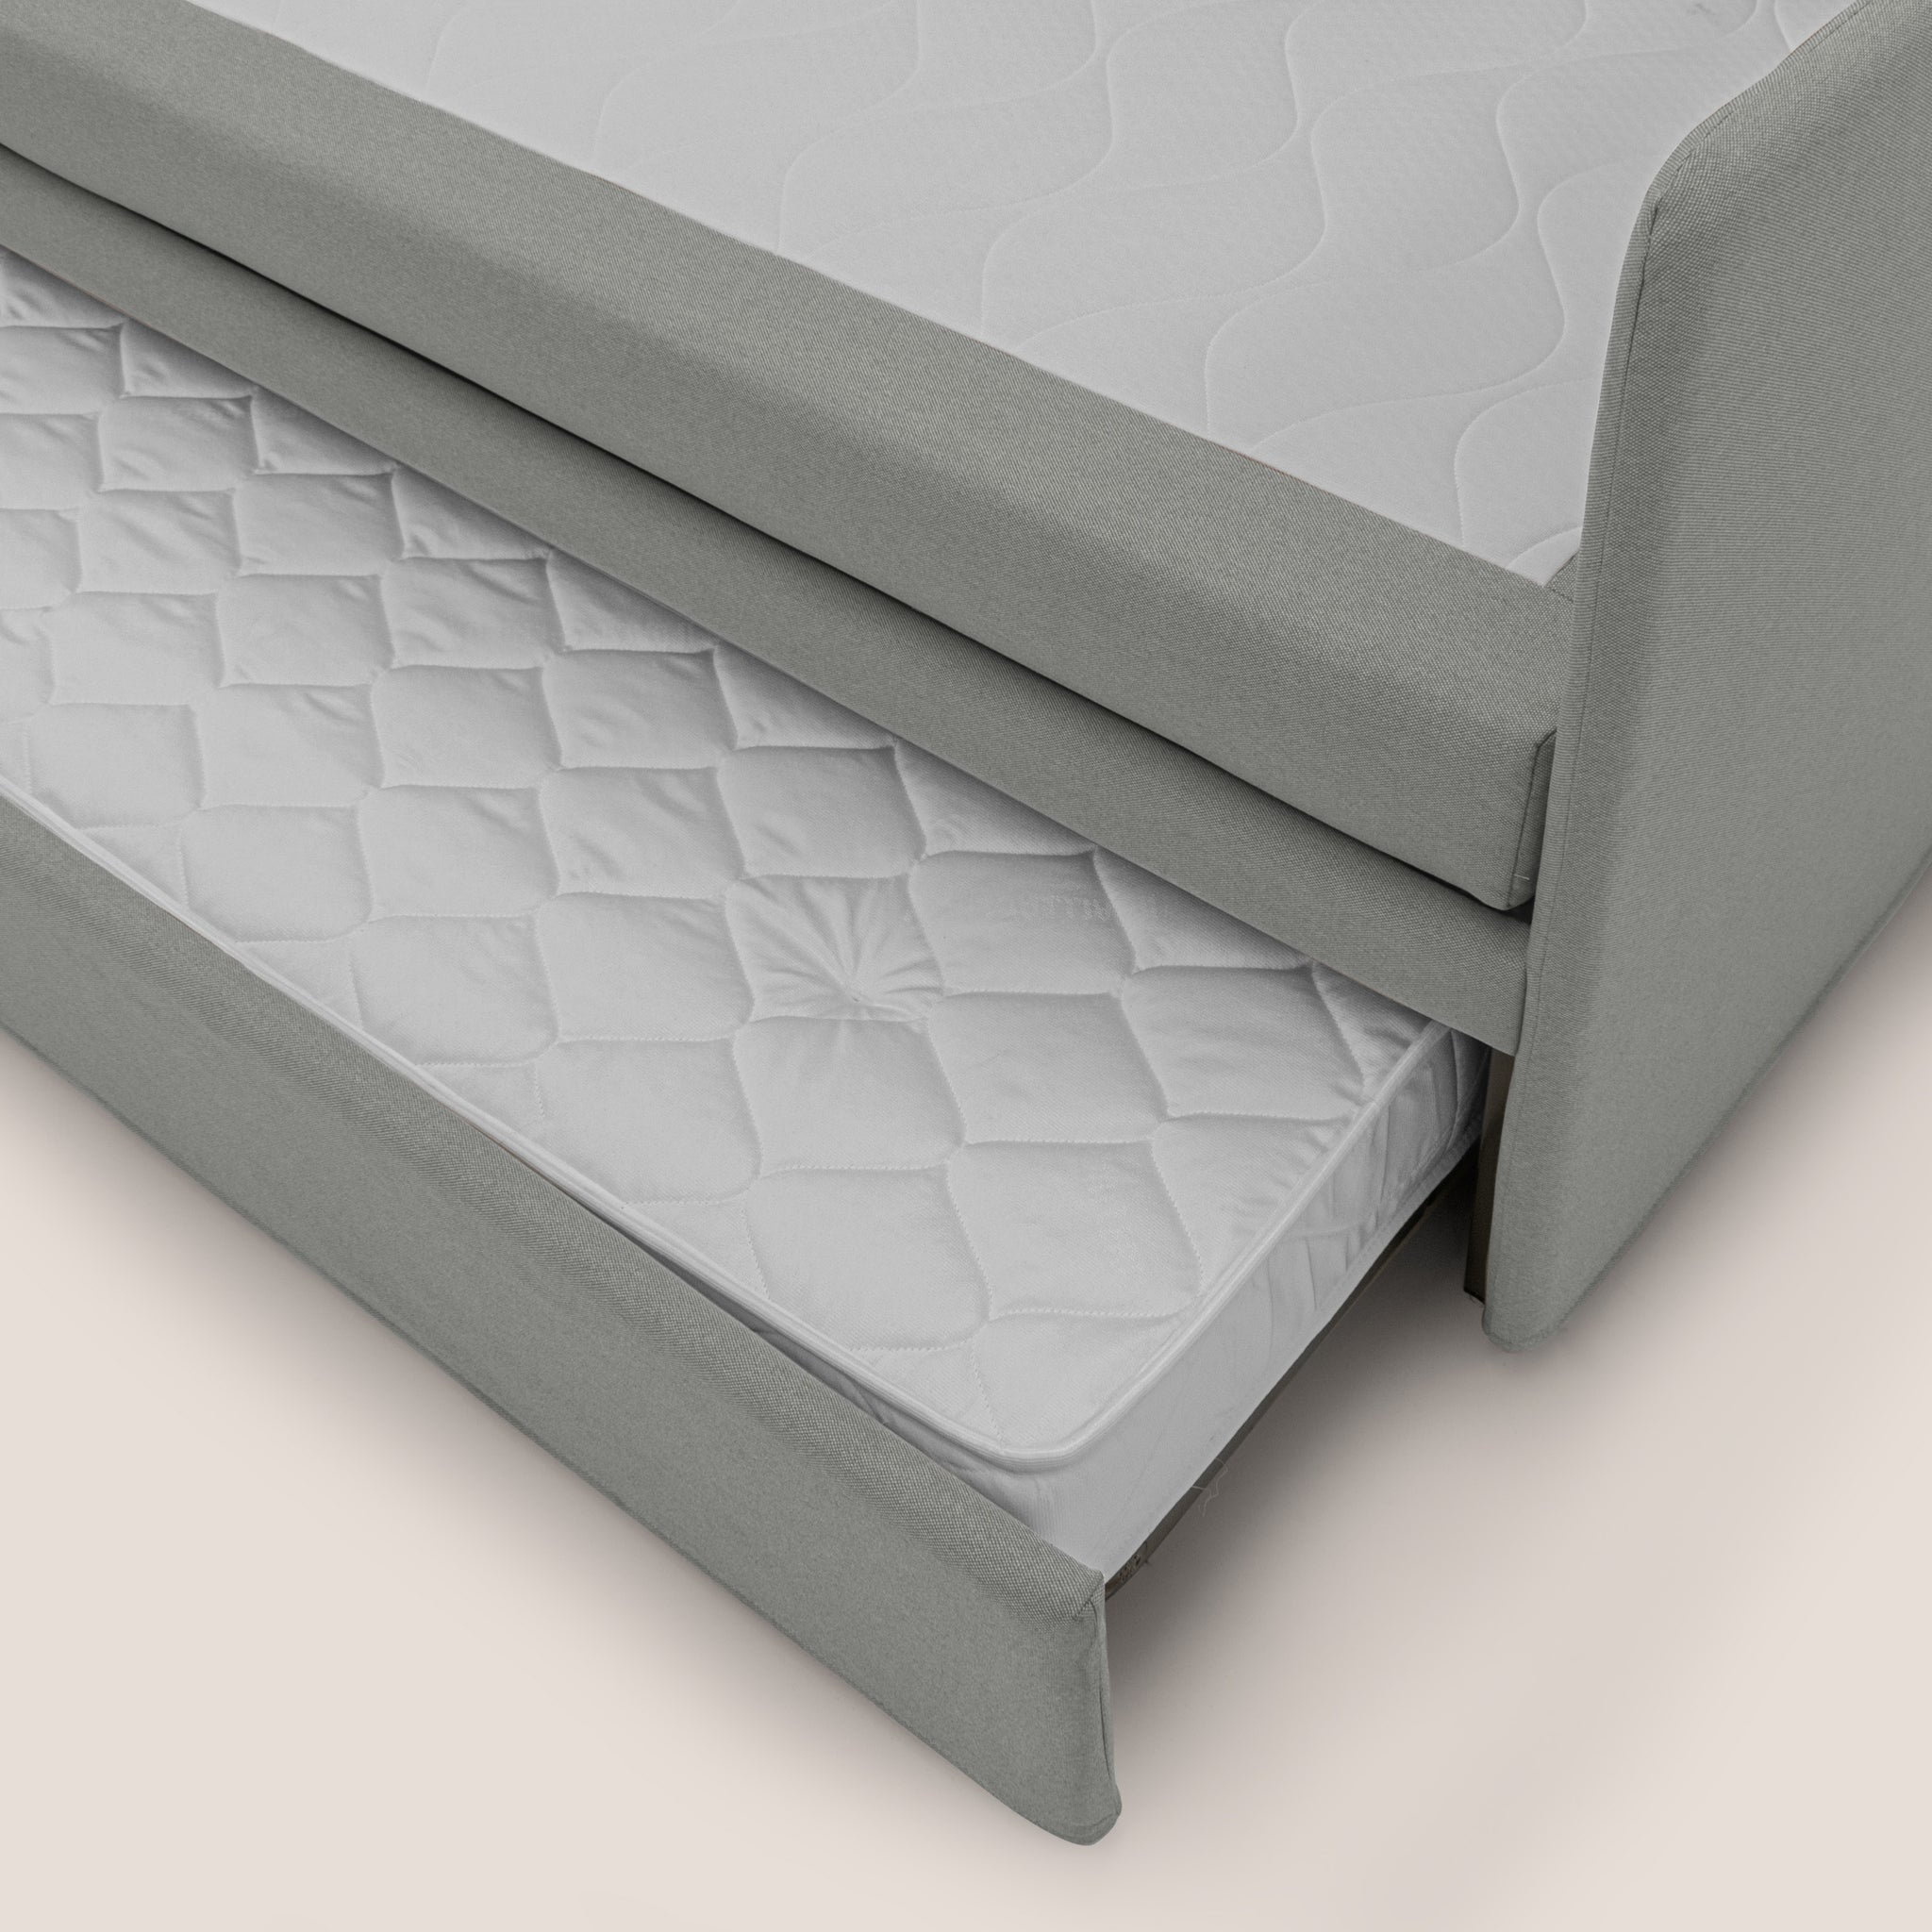 Nolo Divano duplex con doppio letto in tessuto simil cotone impermeabile T13